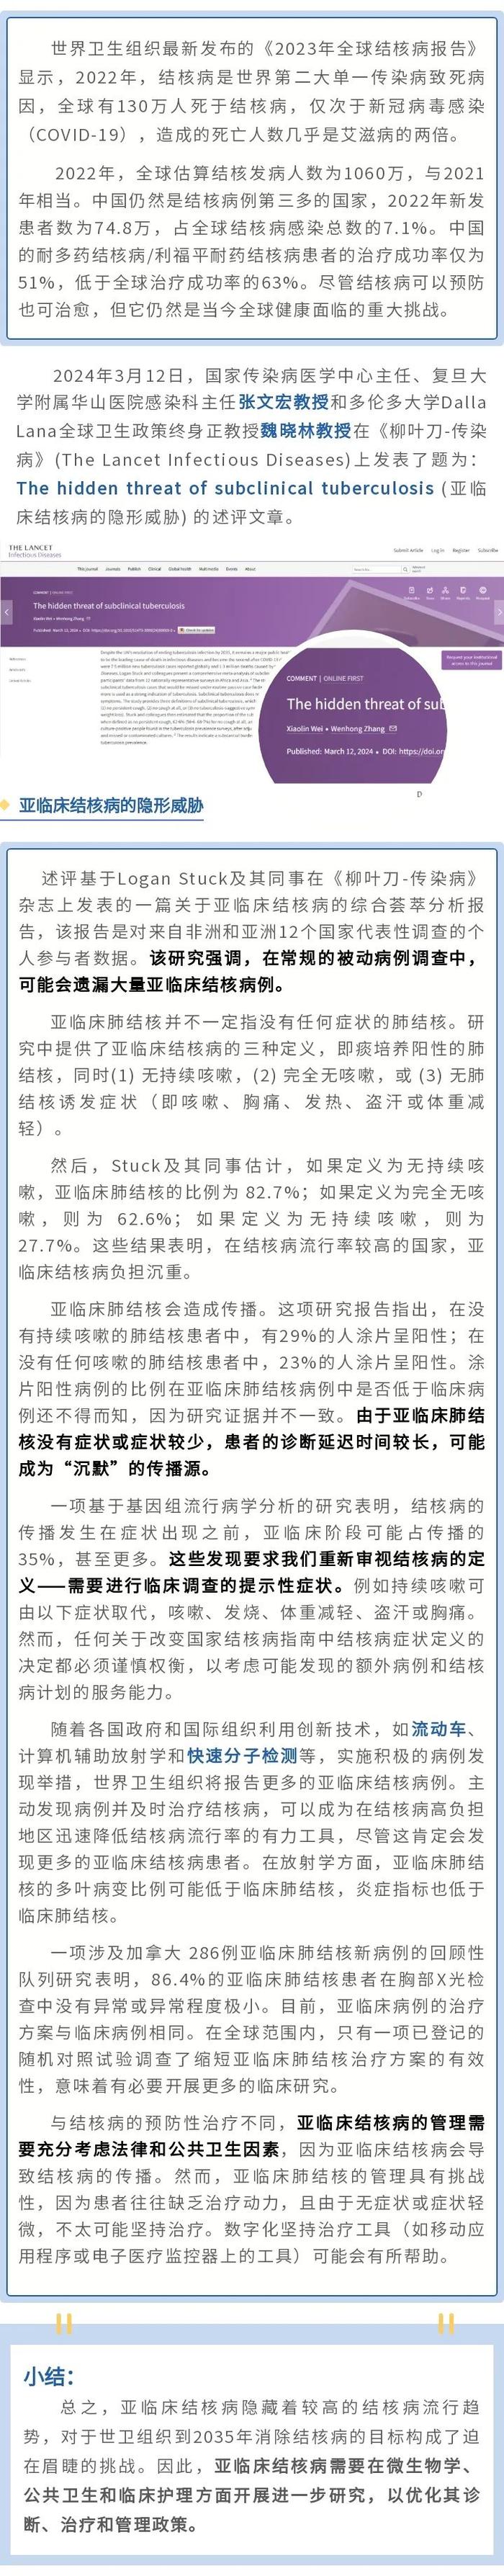 柳叶刀子刊：终止结核流行，张文宏魏晓林教授呼吁关注亚临床结核病隐藏威胁